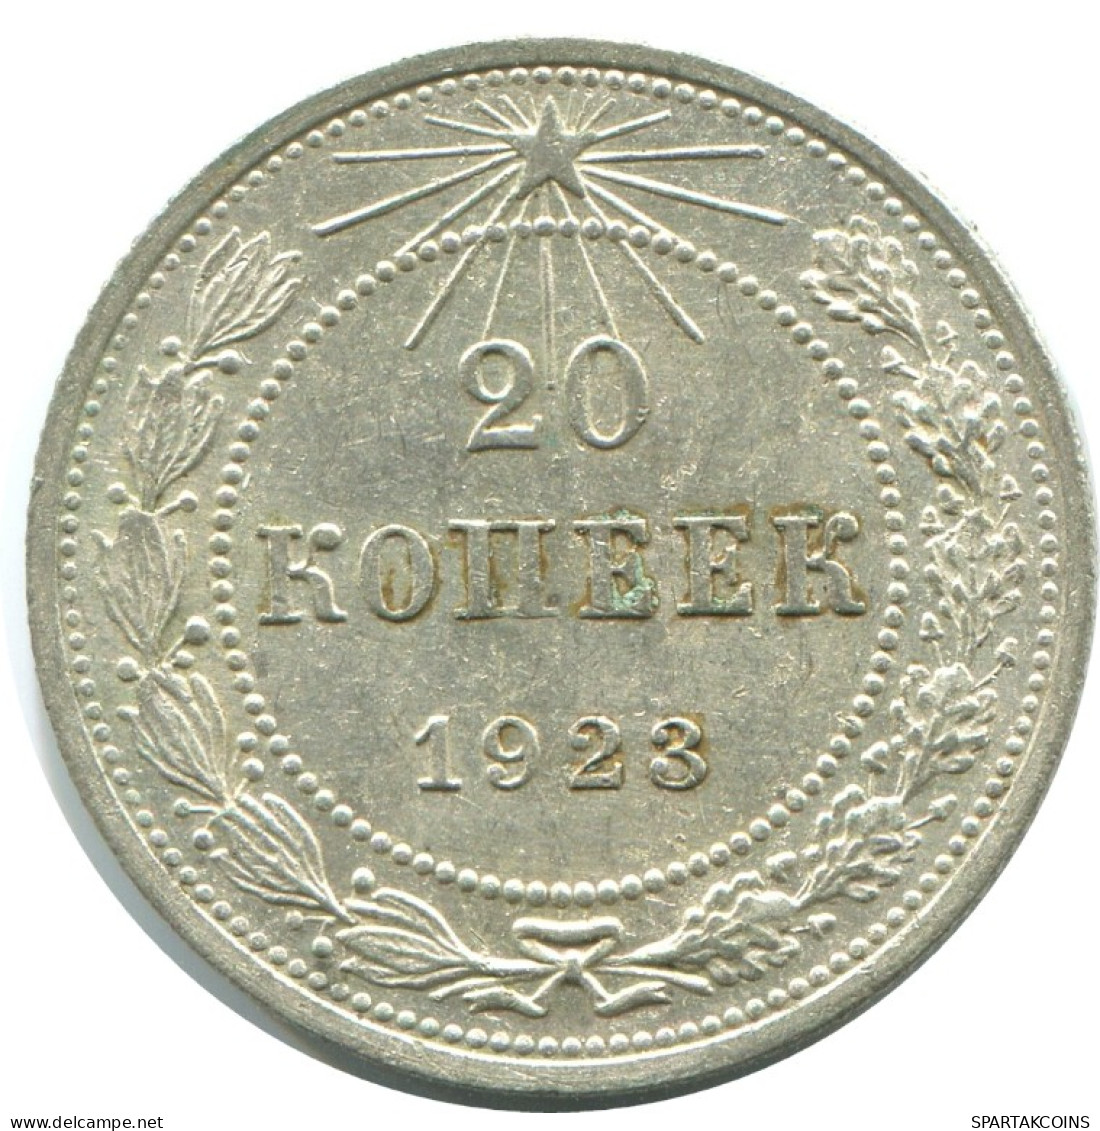 20 KOPEKS 1923 RUSSLAND RUSSIA RSFSR SILBER Münze HIGH GRADE #AF434.4.D.A - Russia